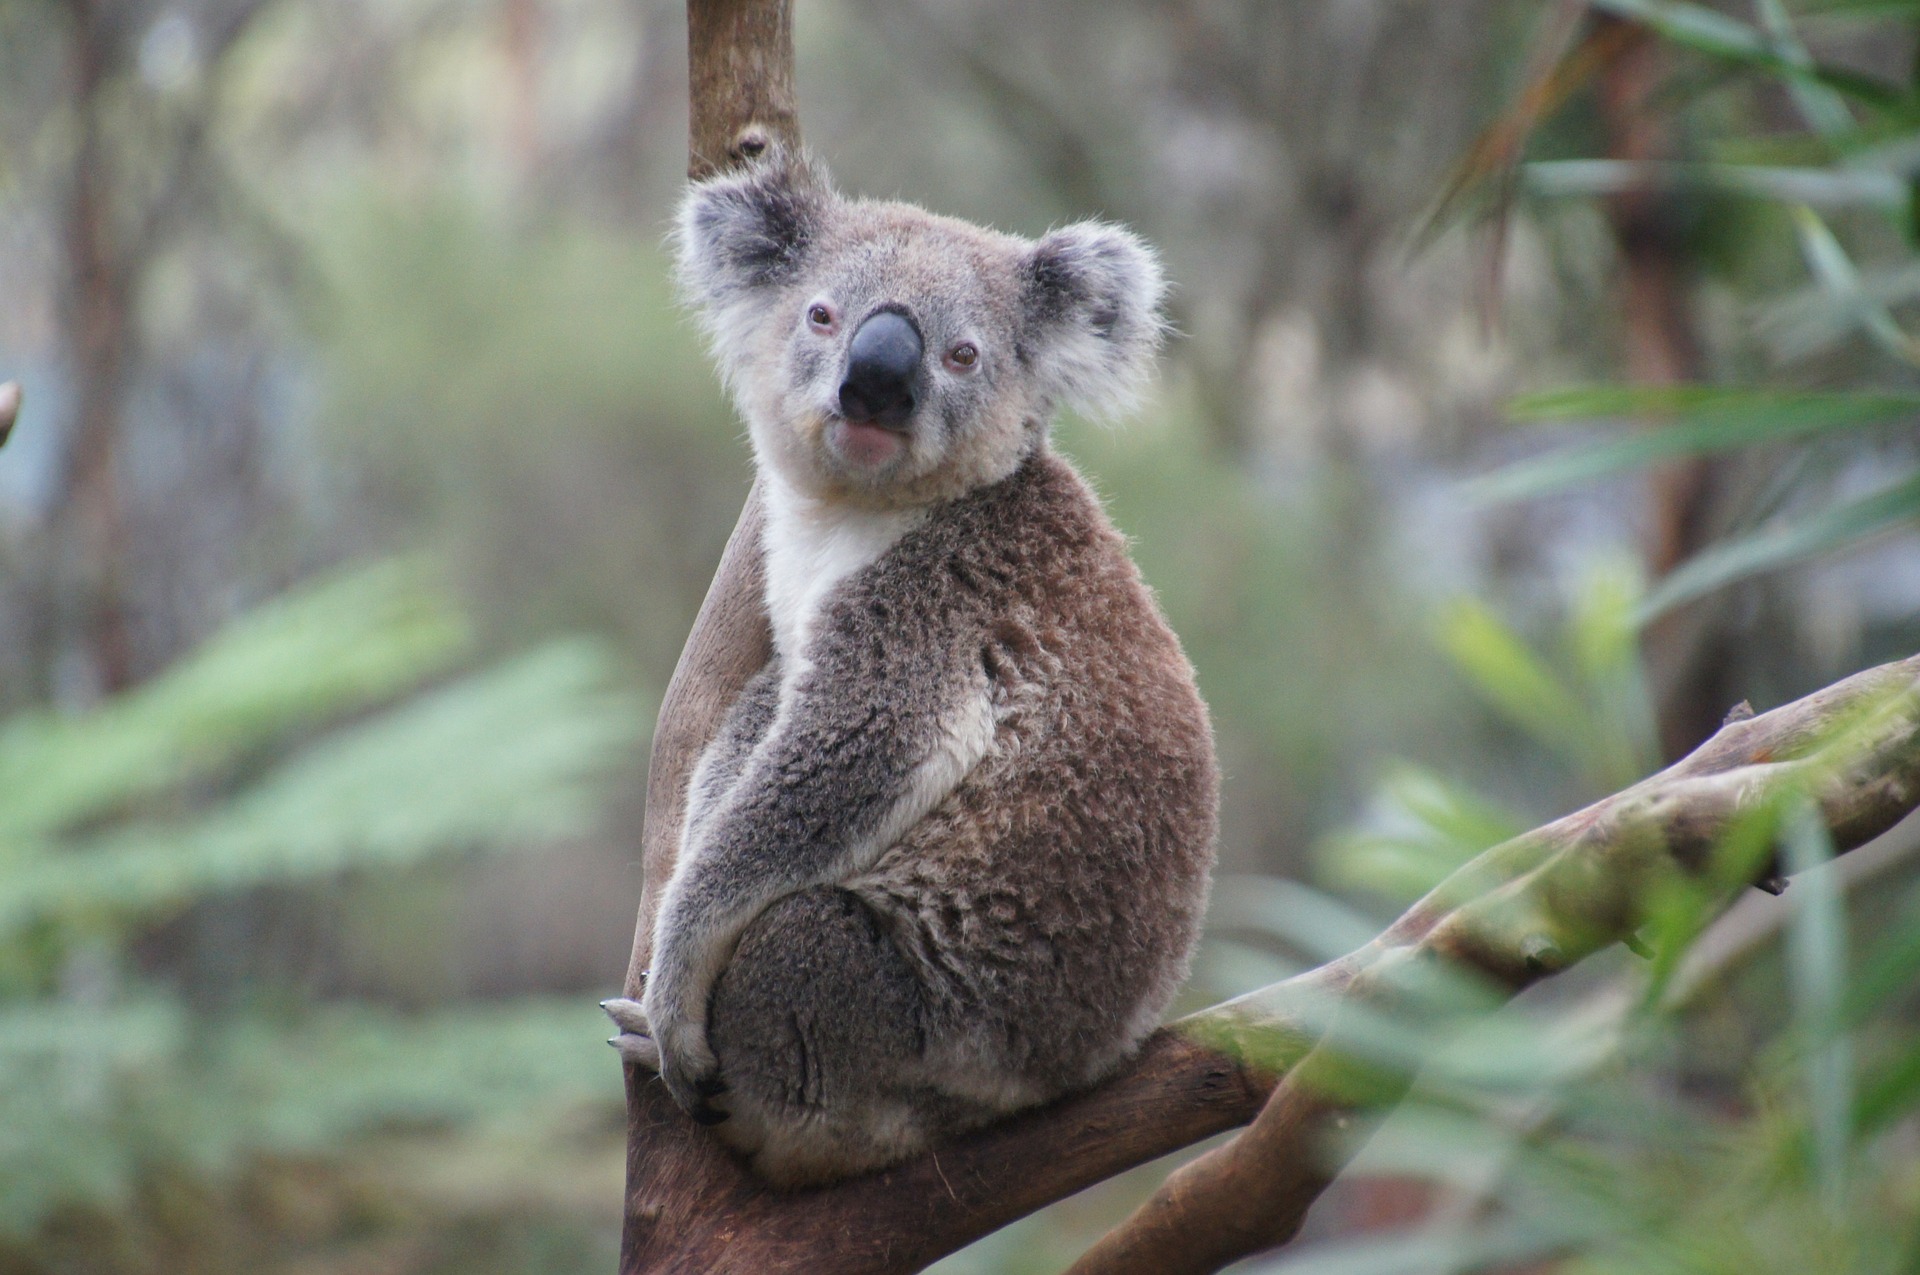 _images/koala.jpg